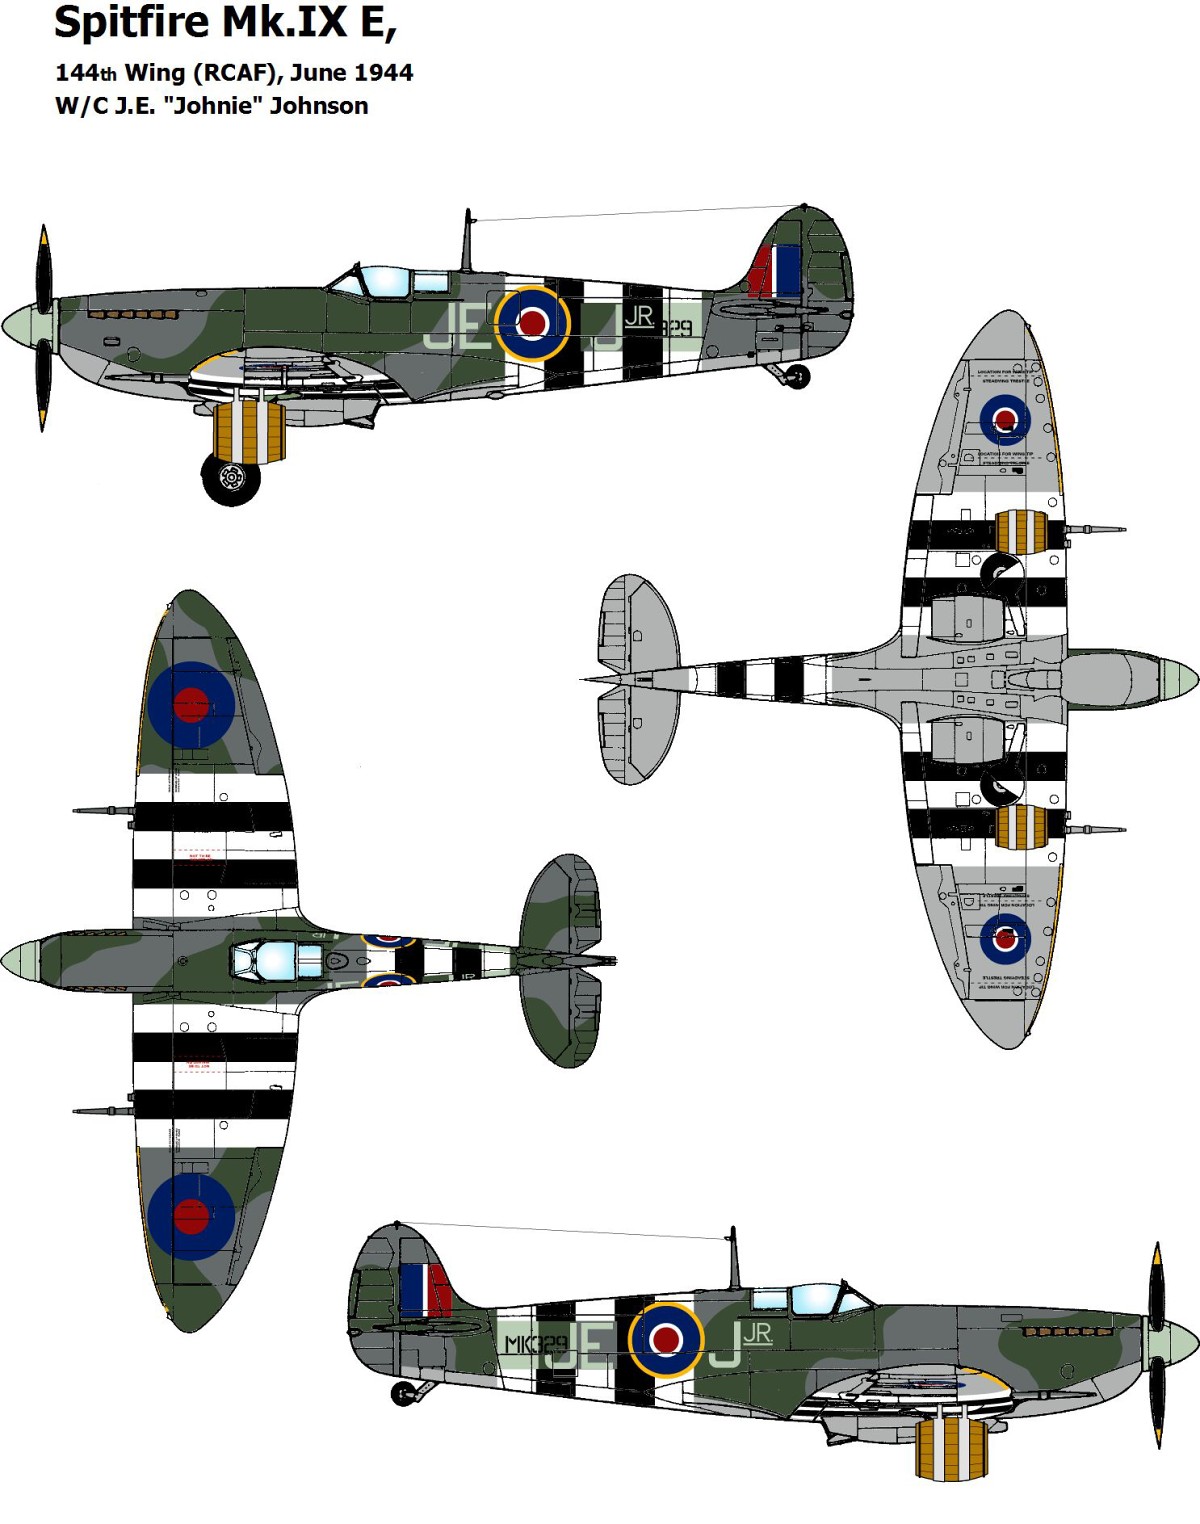 Spitfire Mk. IXe